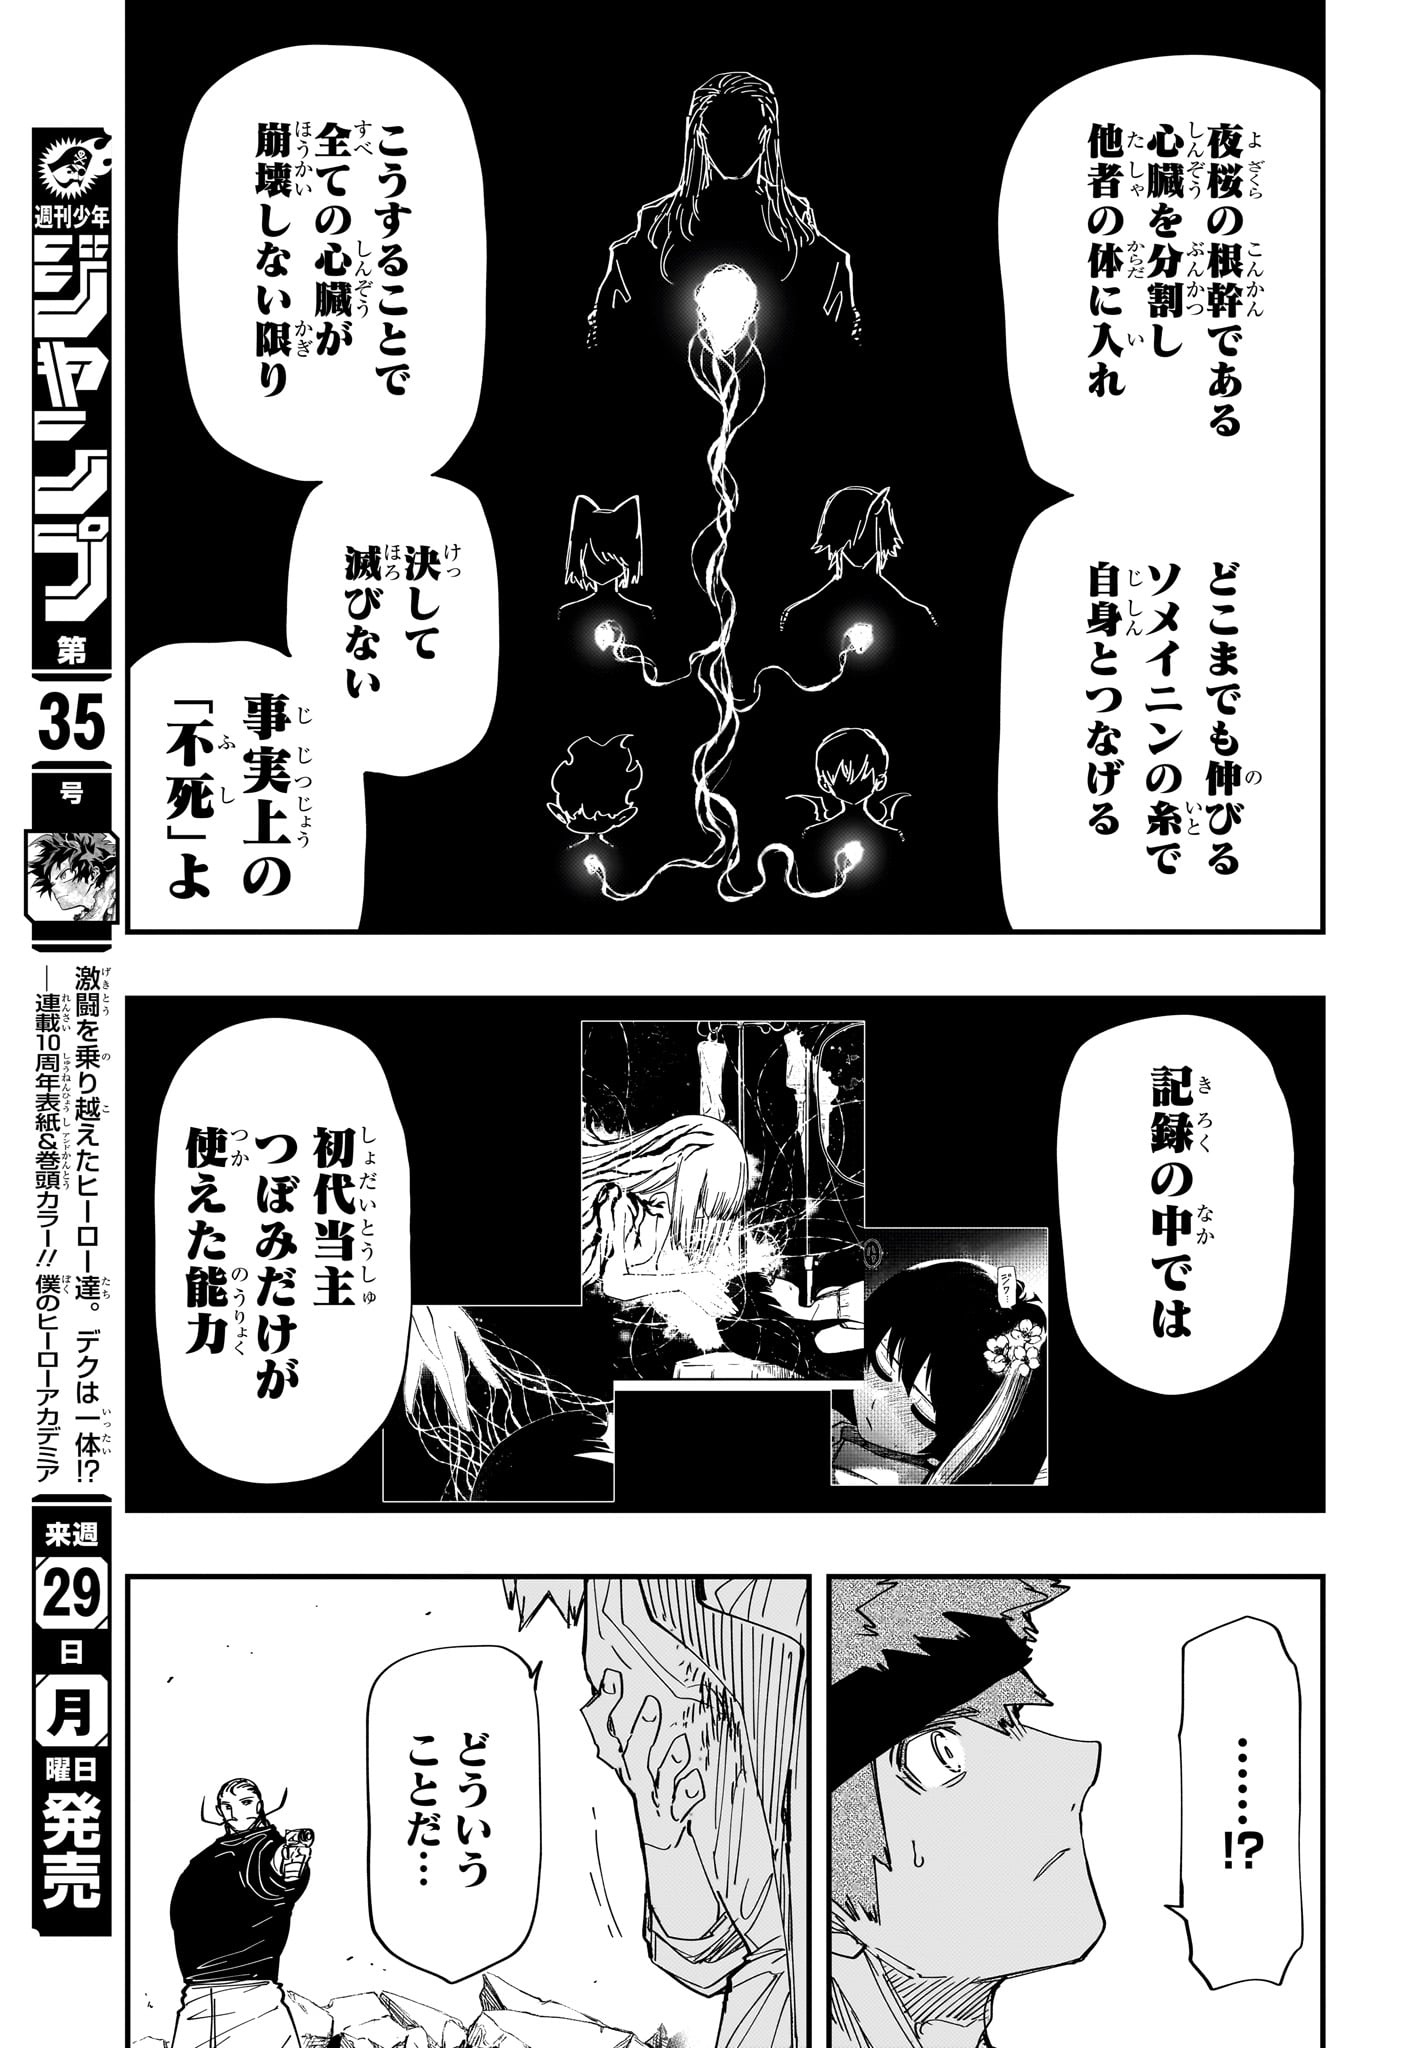 Yozakura-san Chi no Daisakusen - Chapter 235 - Page 11